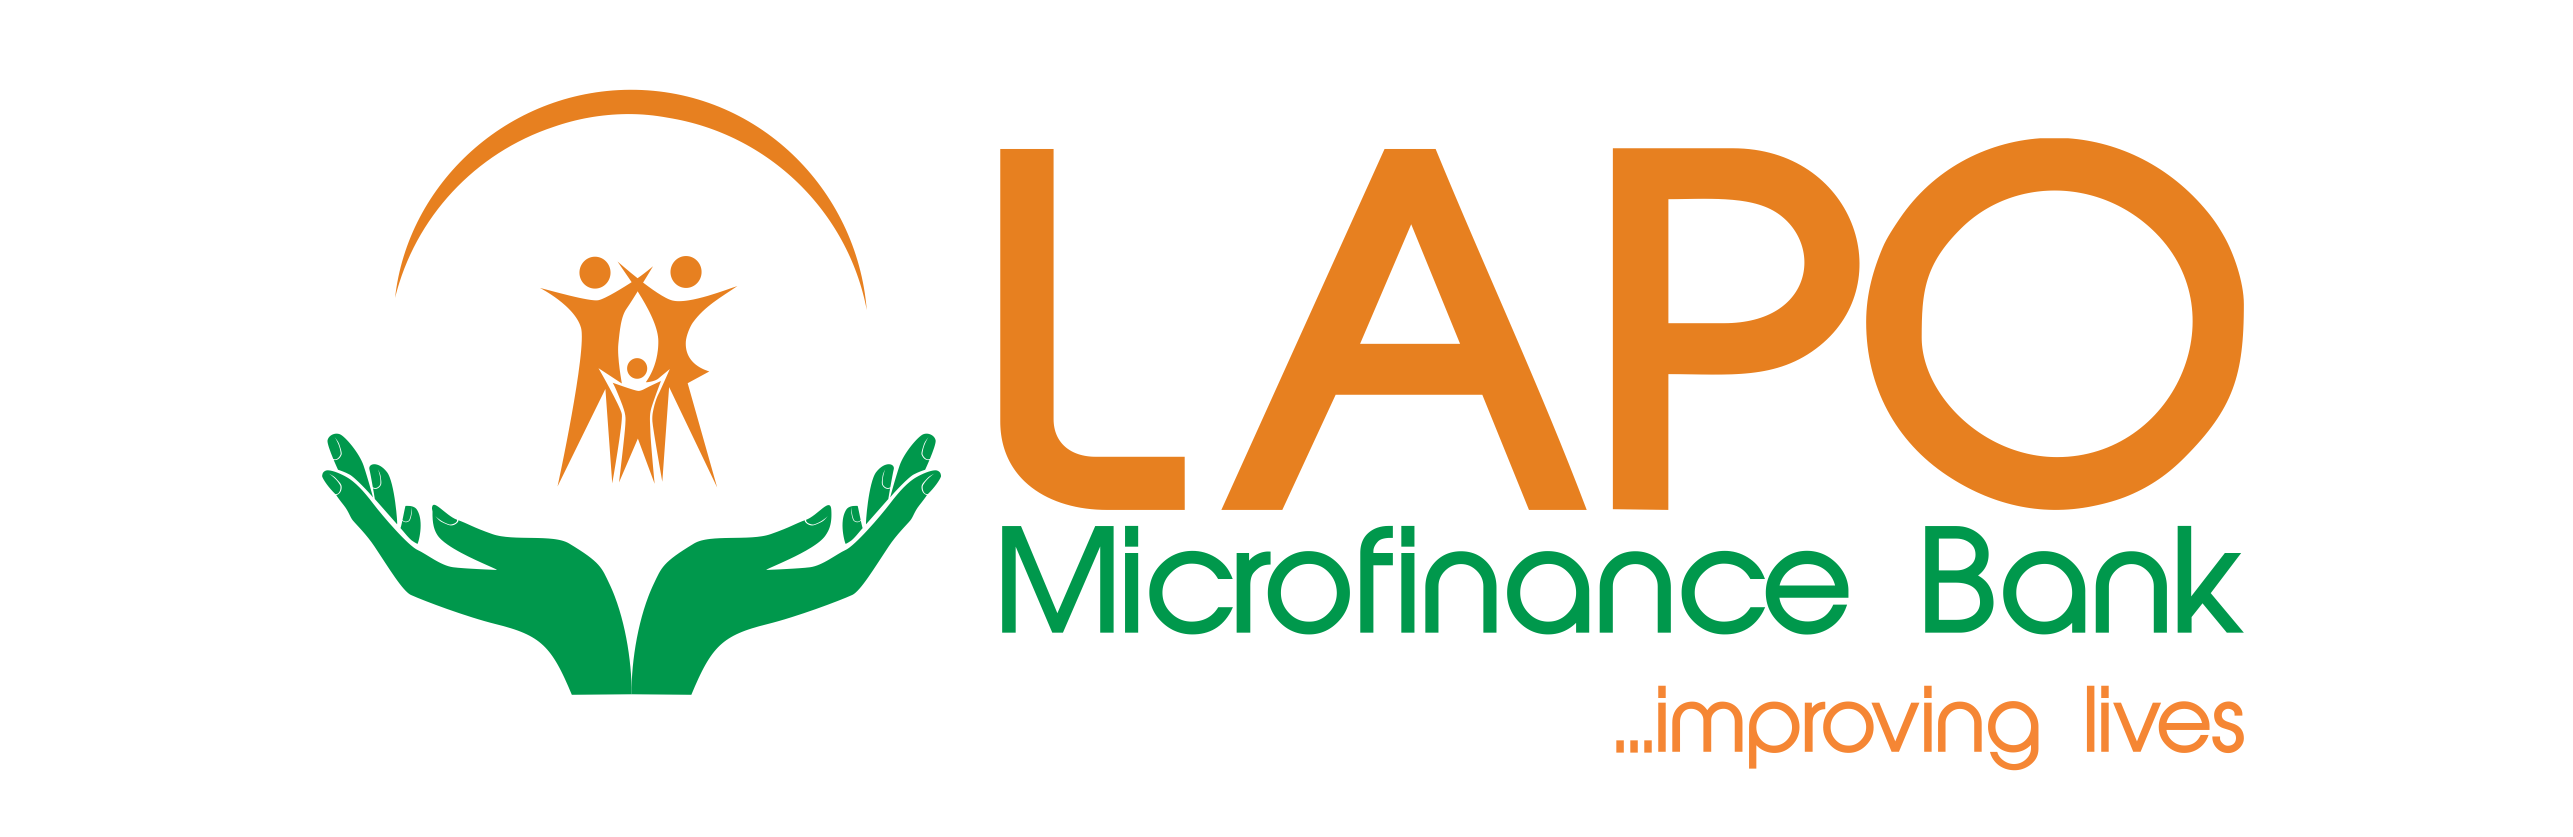 Microfinance Logo - Vecteurs et PSD gratuits à télécharger